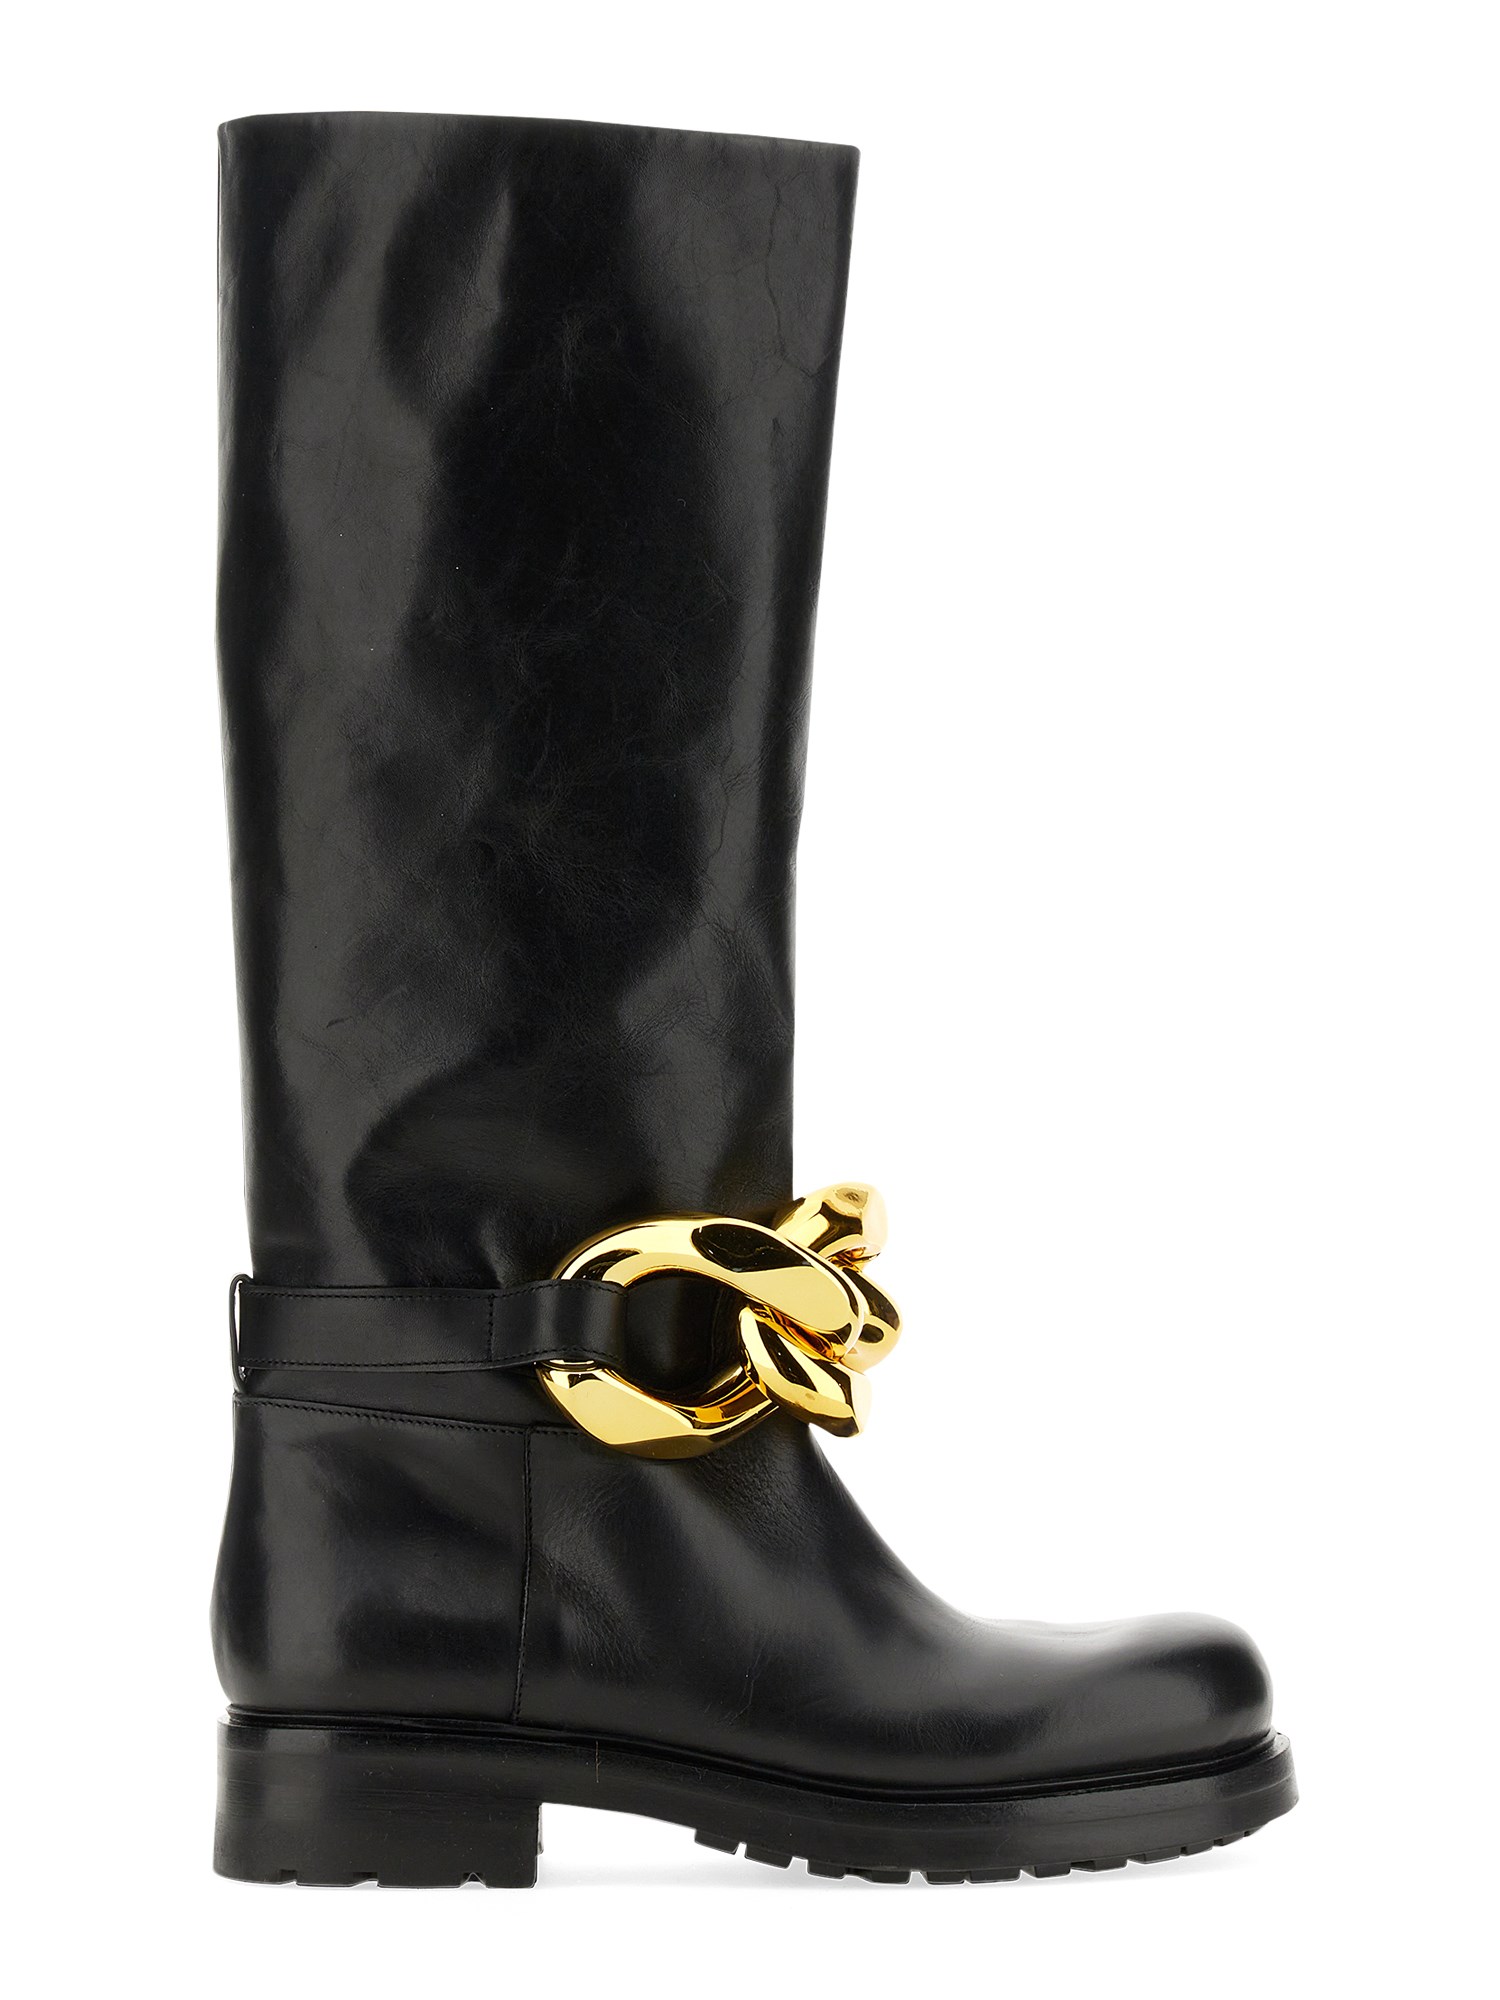 elena iachi boot with chain